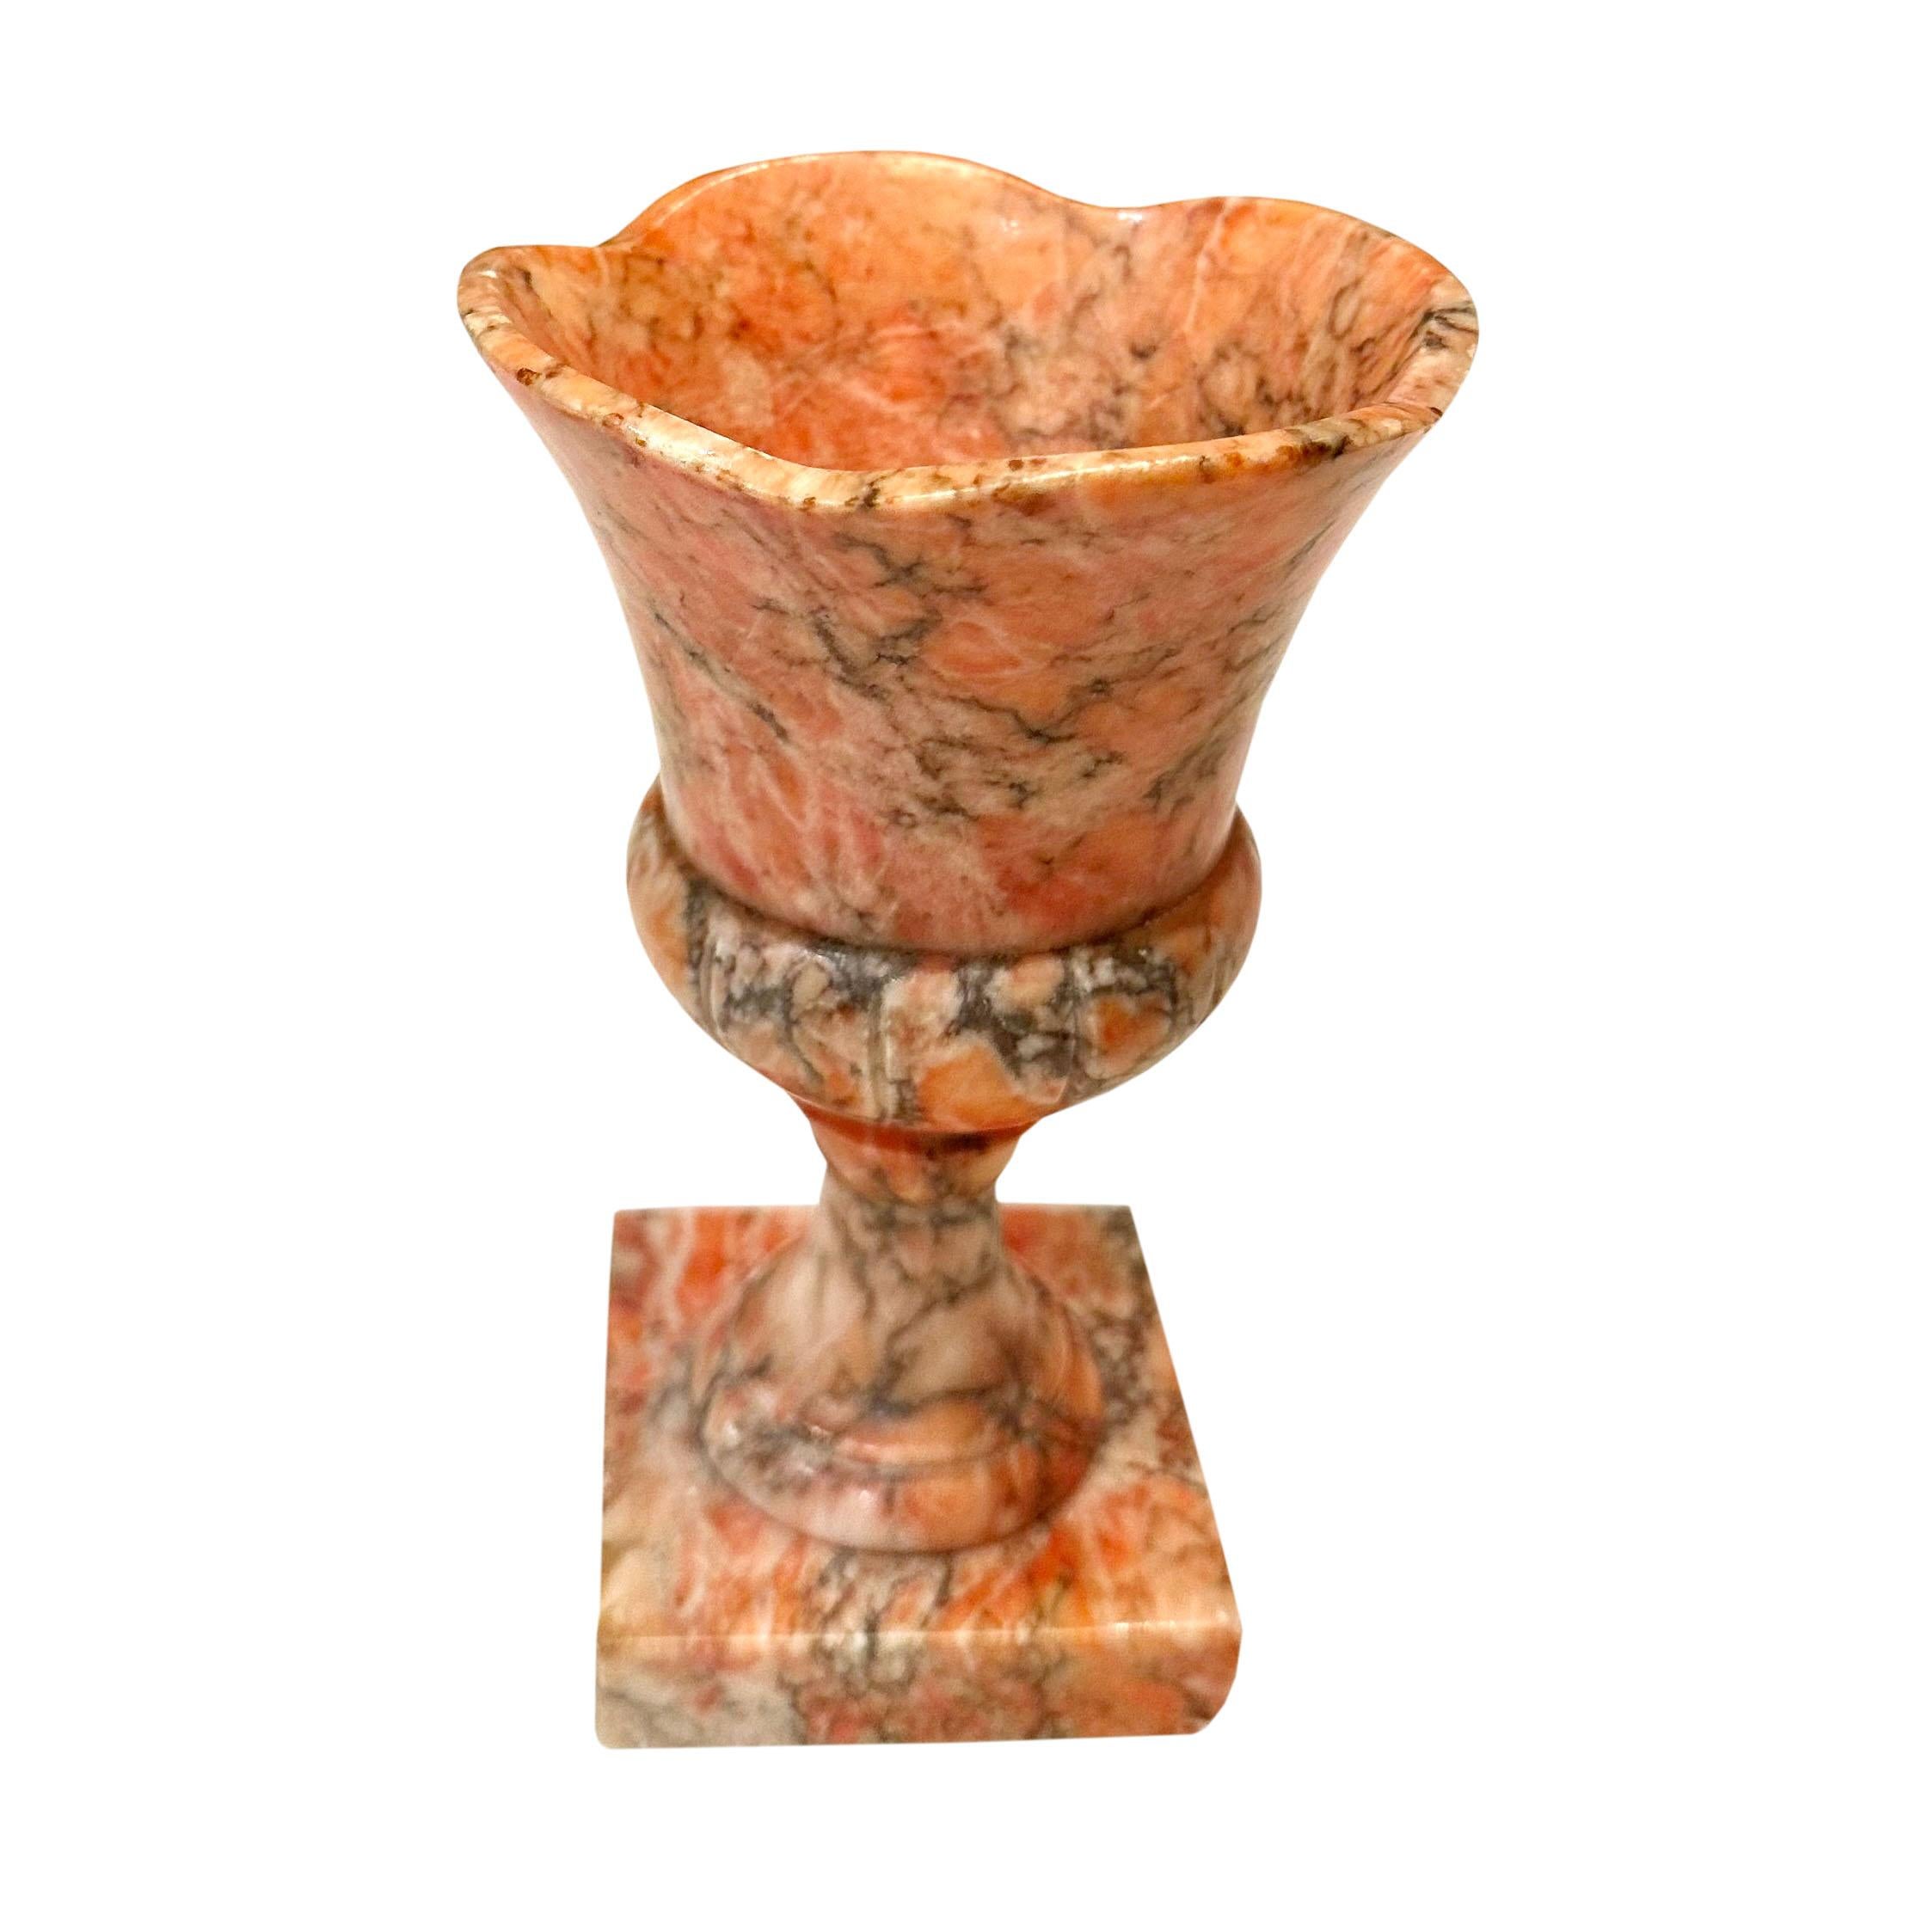 Un joli vase en marbre de couleur pêche provenant d'Italie, en forme d'urne avec un bord volant sur une base carrée. Vers les années 1940.